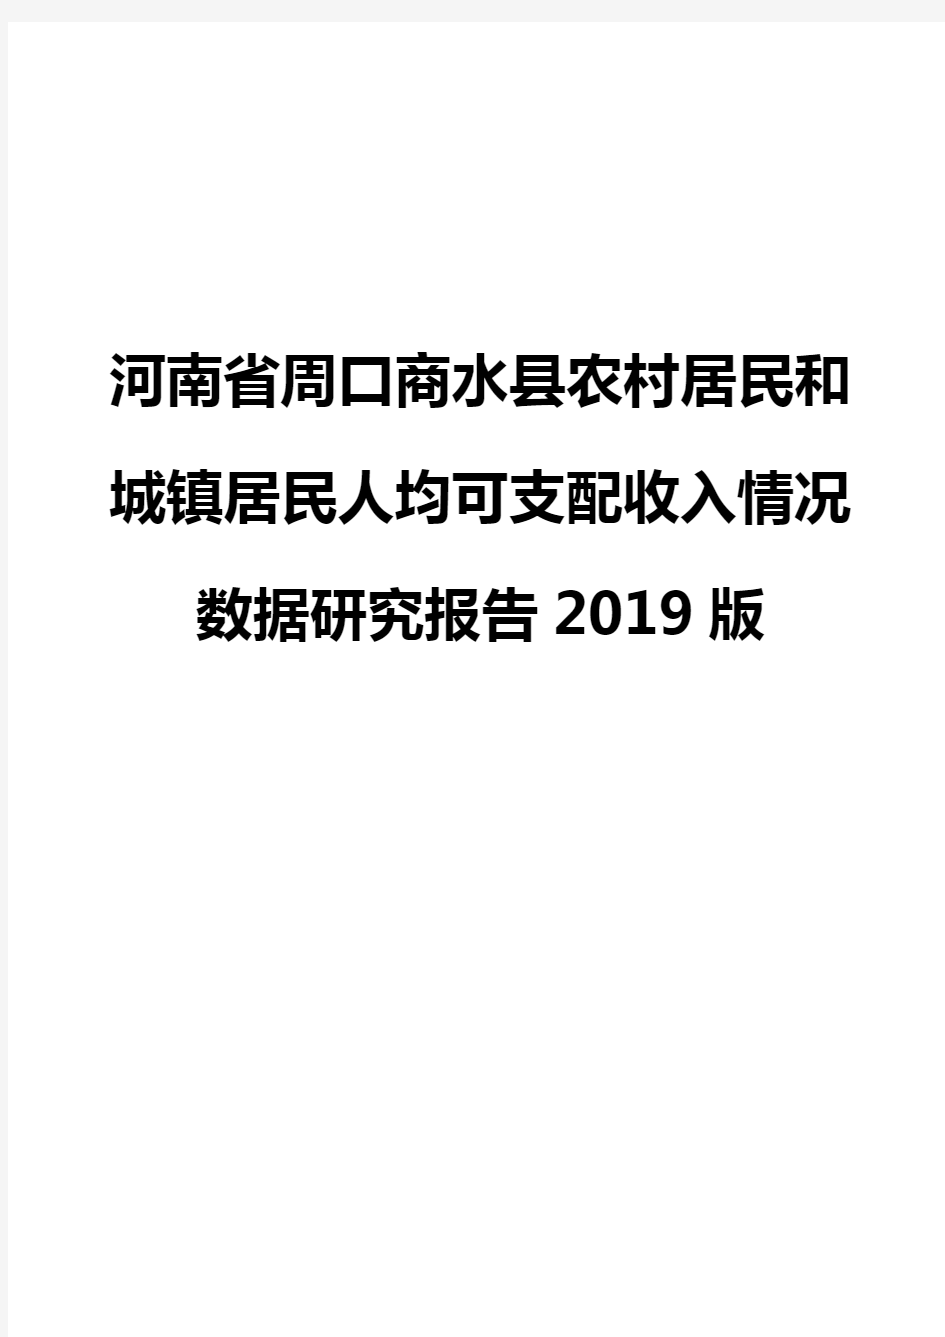 河南省周口商水县农村居民和城镇居民人均可支配收入情况数据研究报告2019版